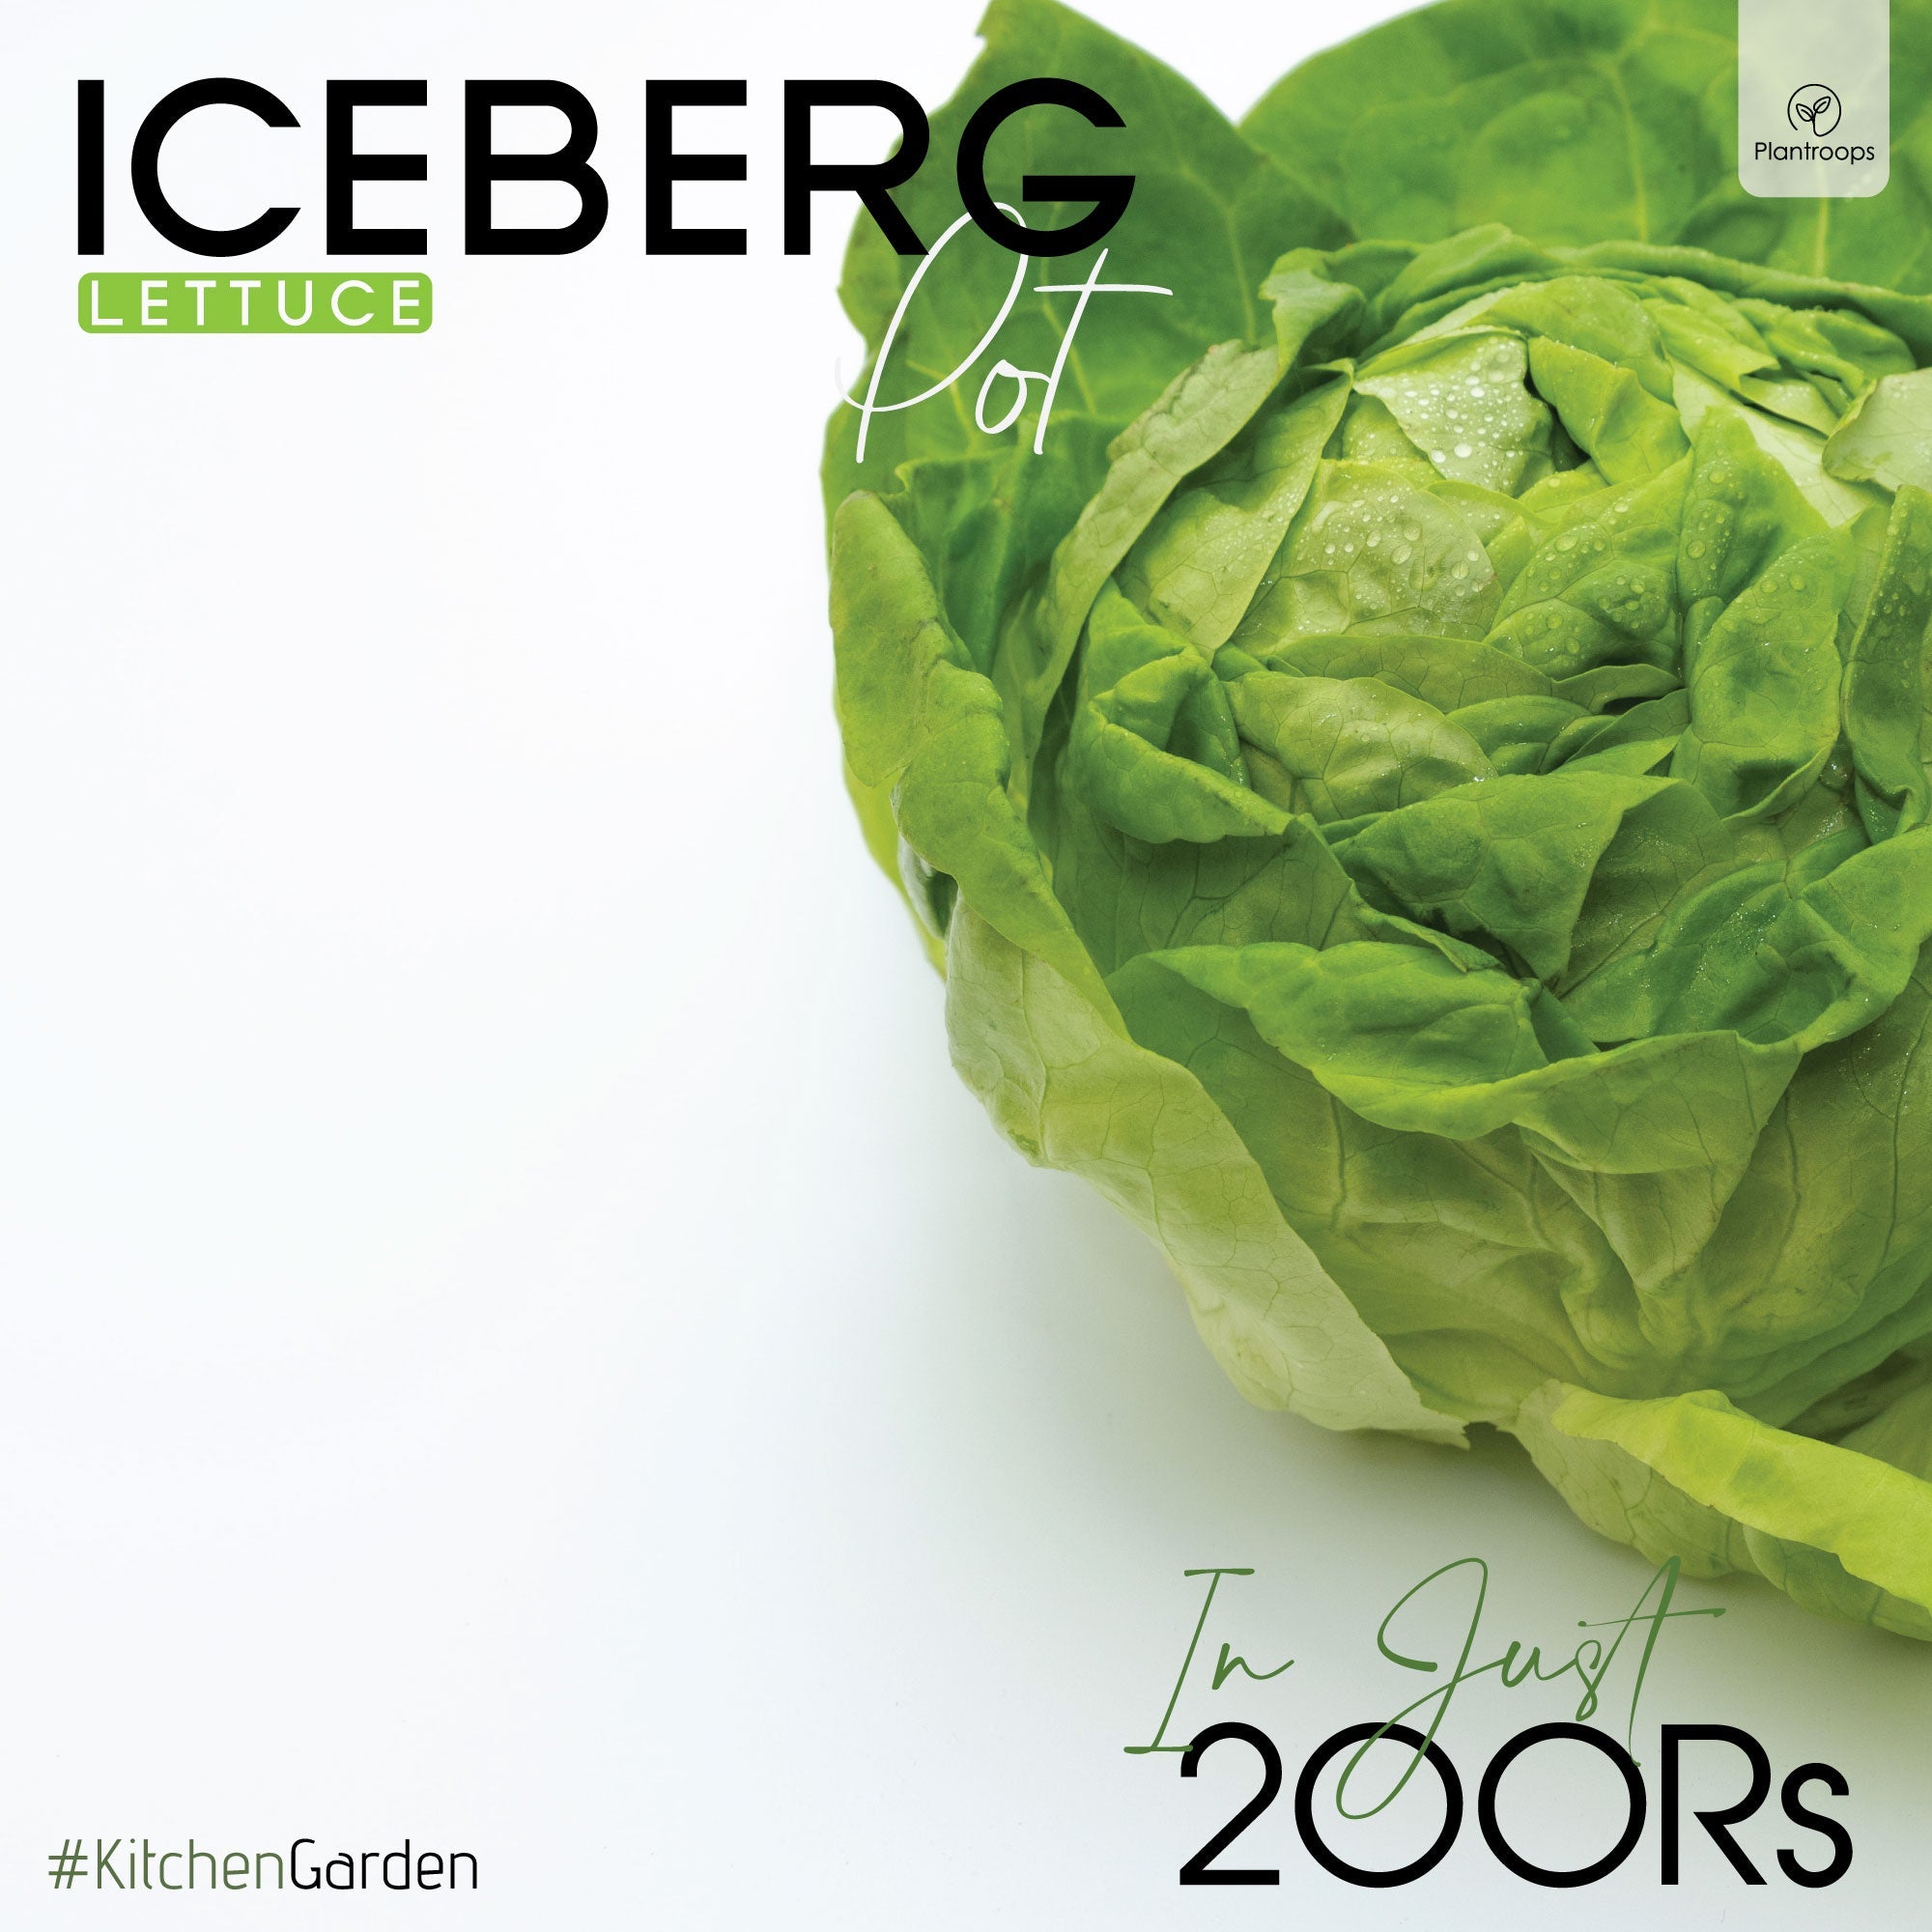 Iceberg (Lettuce) Pot